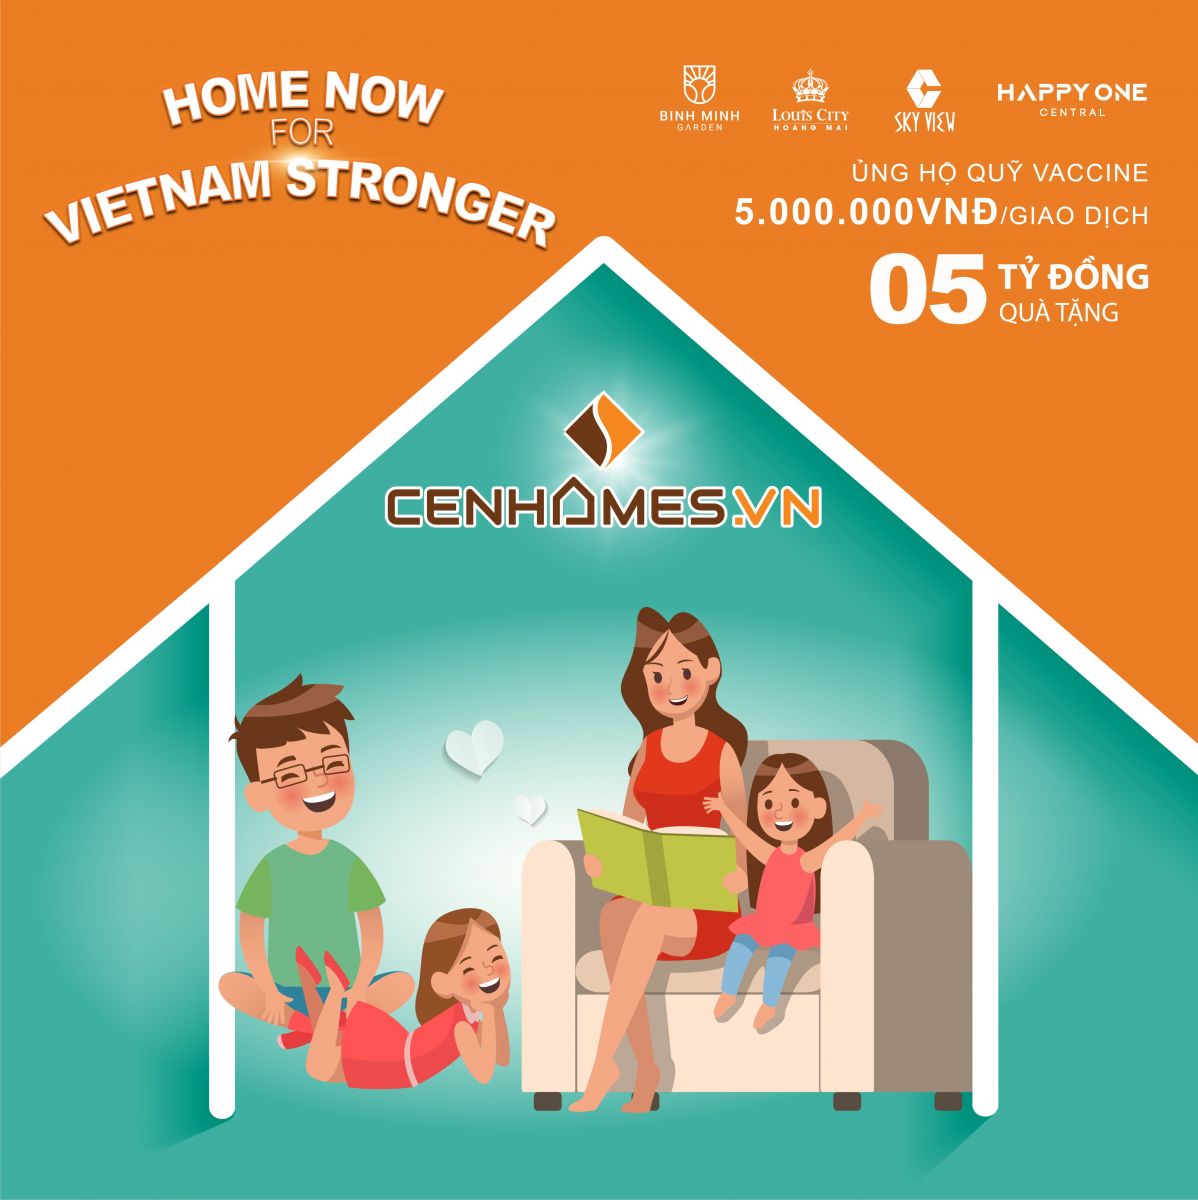 Home now for Vietnam Stronger: Hãy để sức mạnh tinh thần viral nhanh hơn tốc độ lây lan của Virus